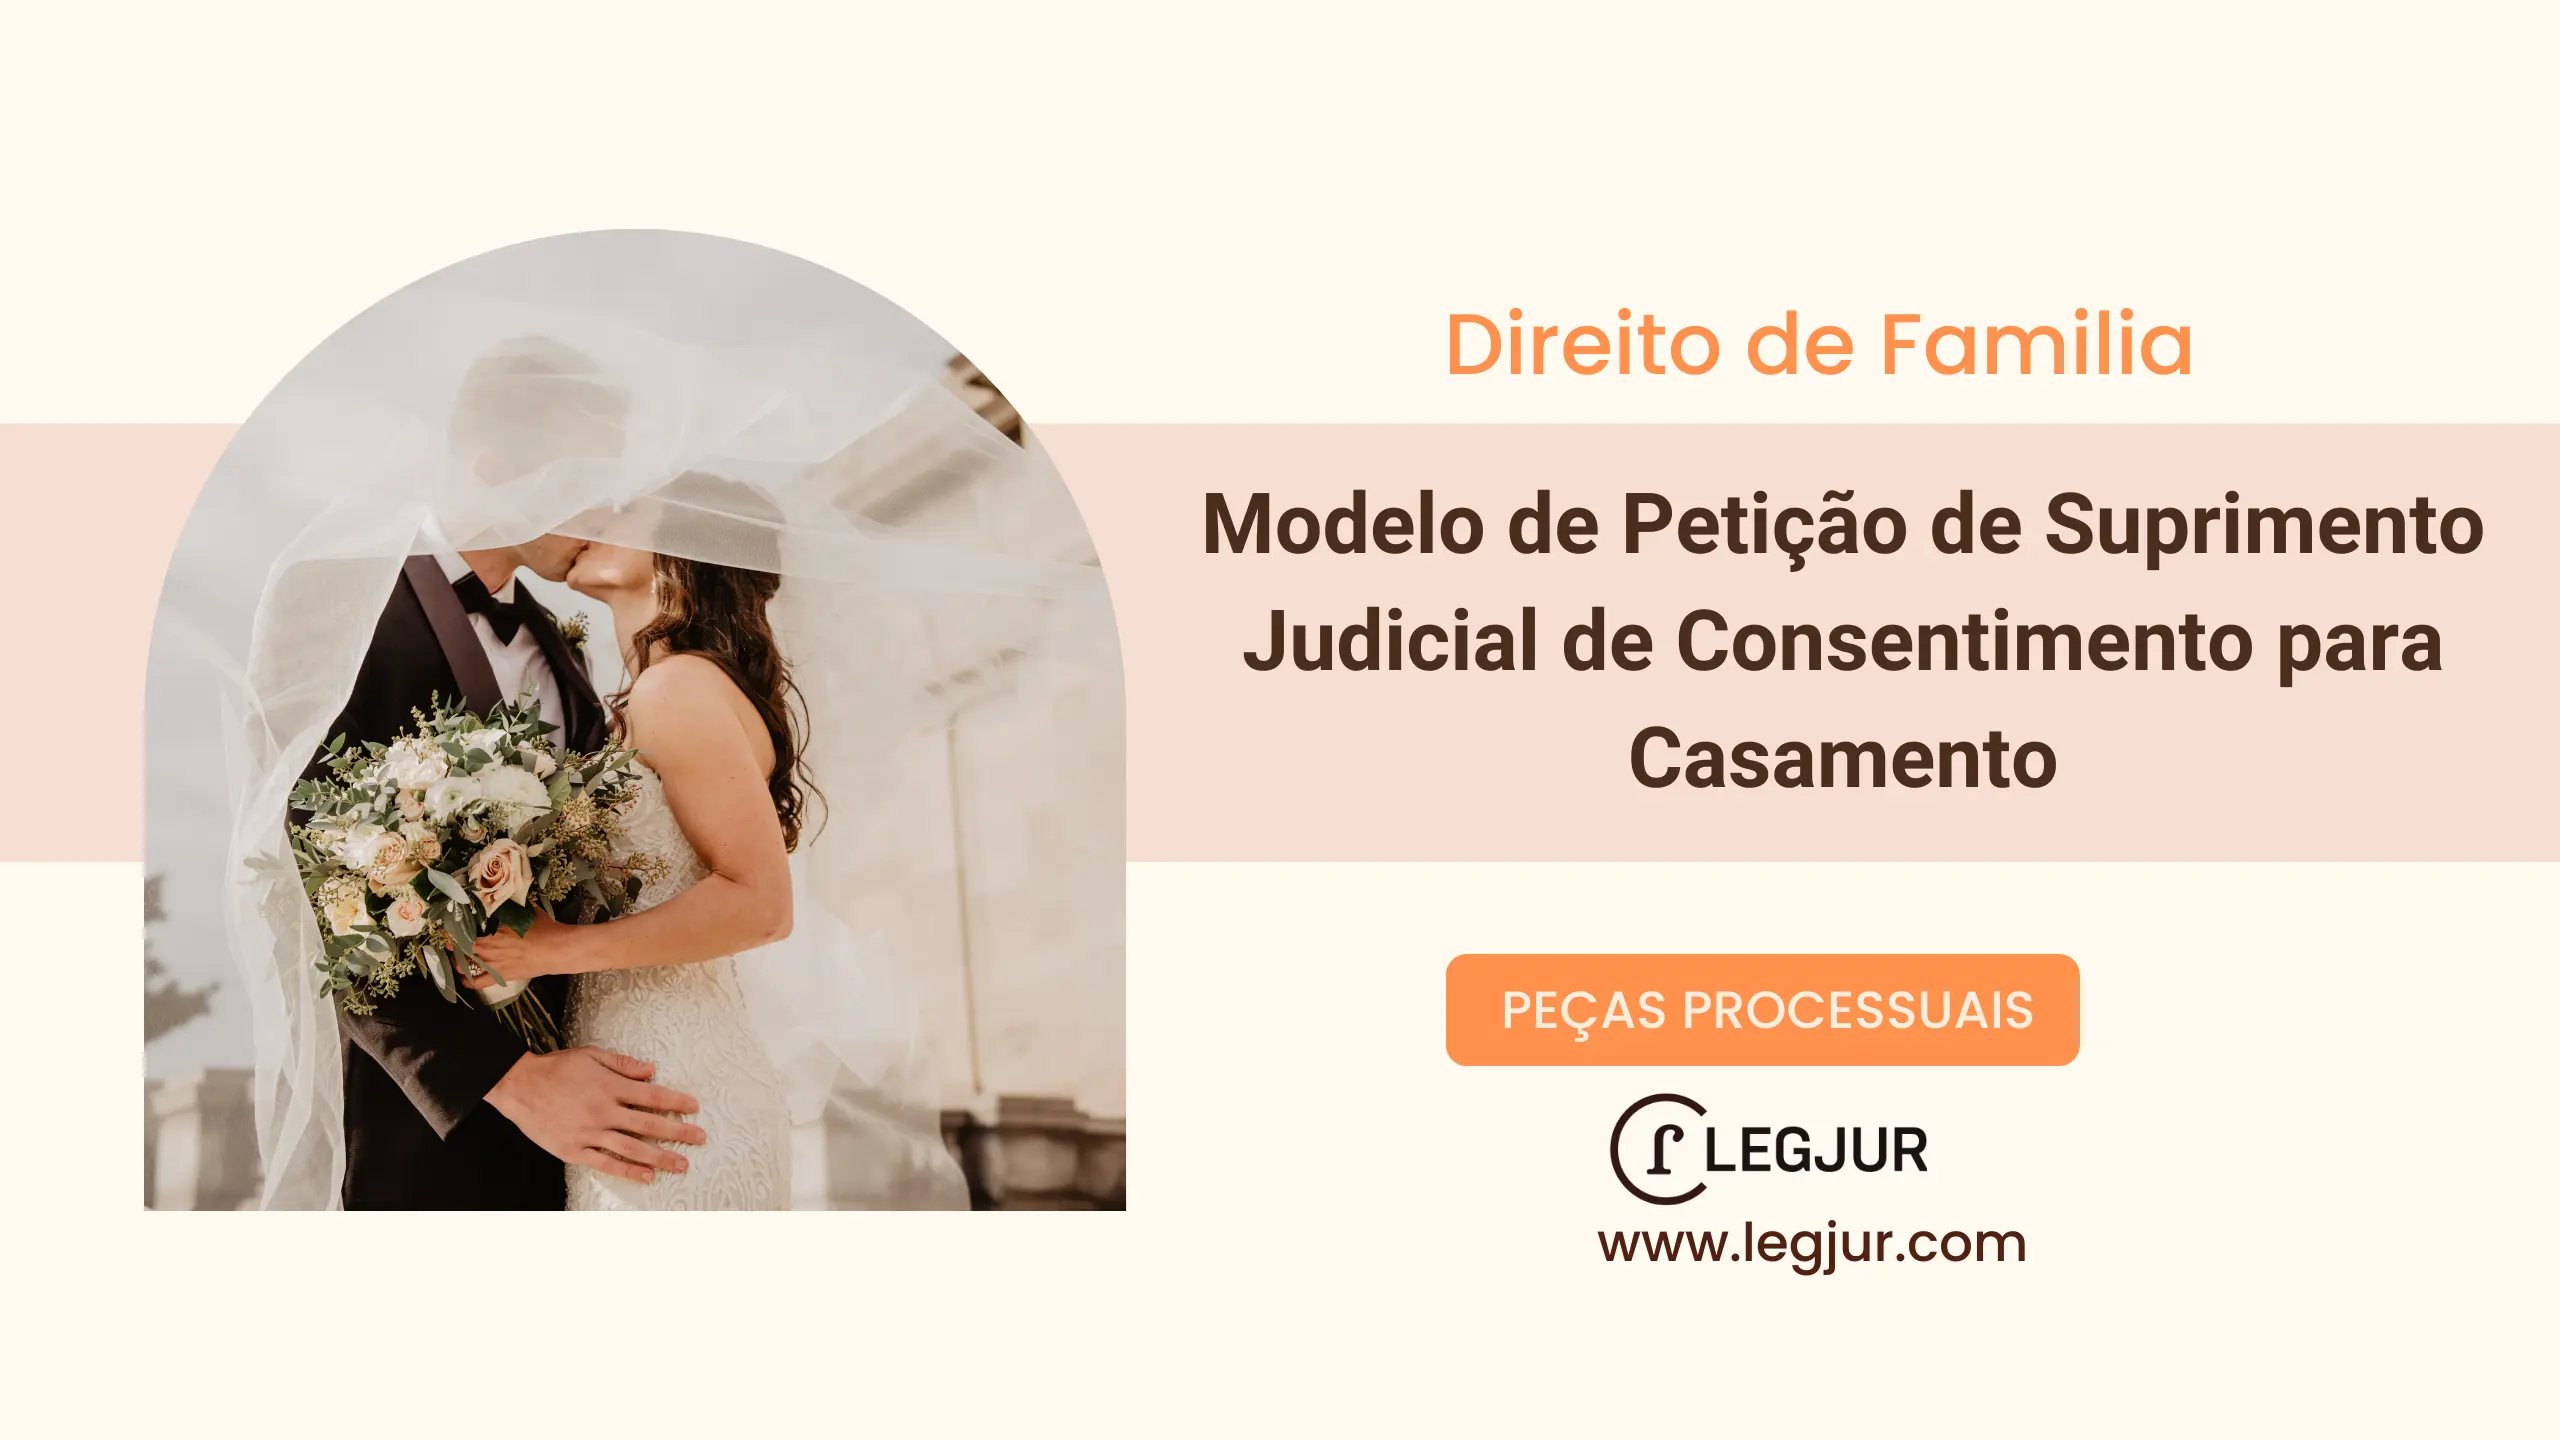 Modelo de Petição de Suprimento Judicial de Consentimento para Casamento